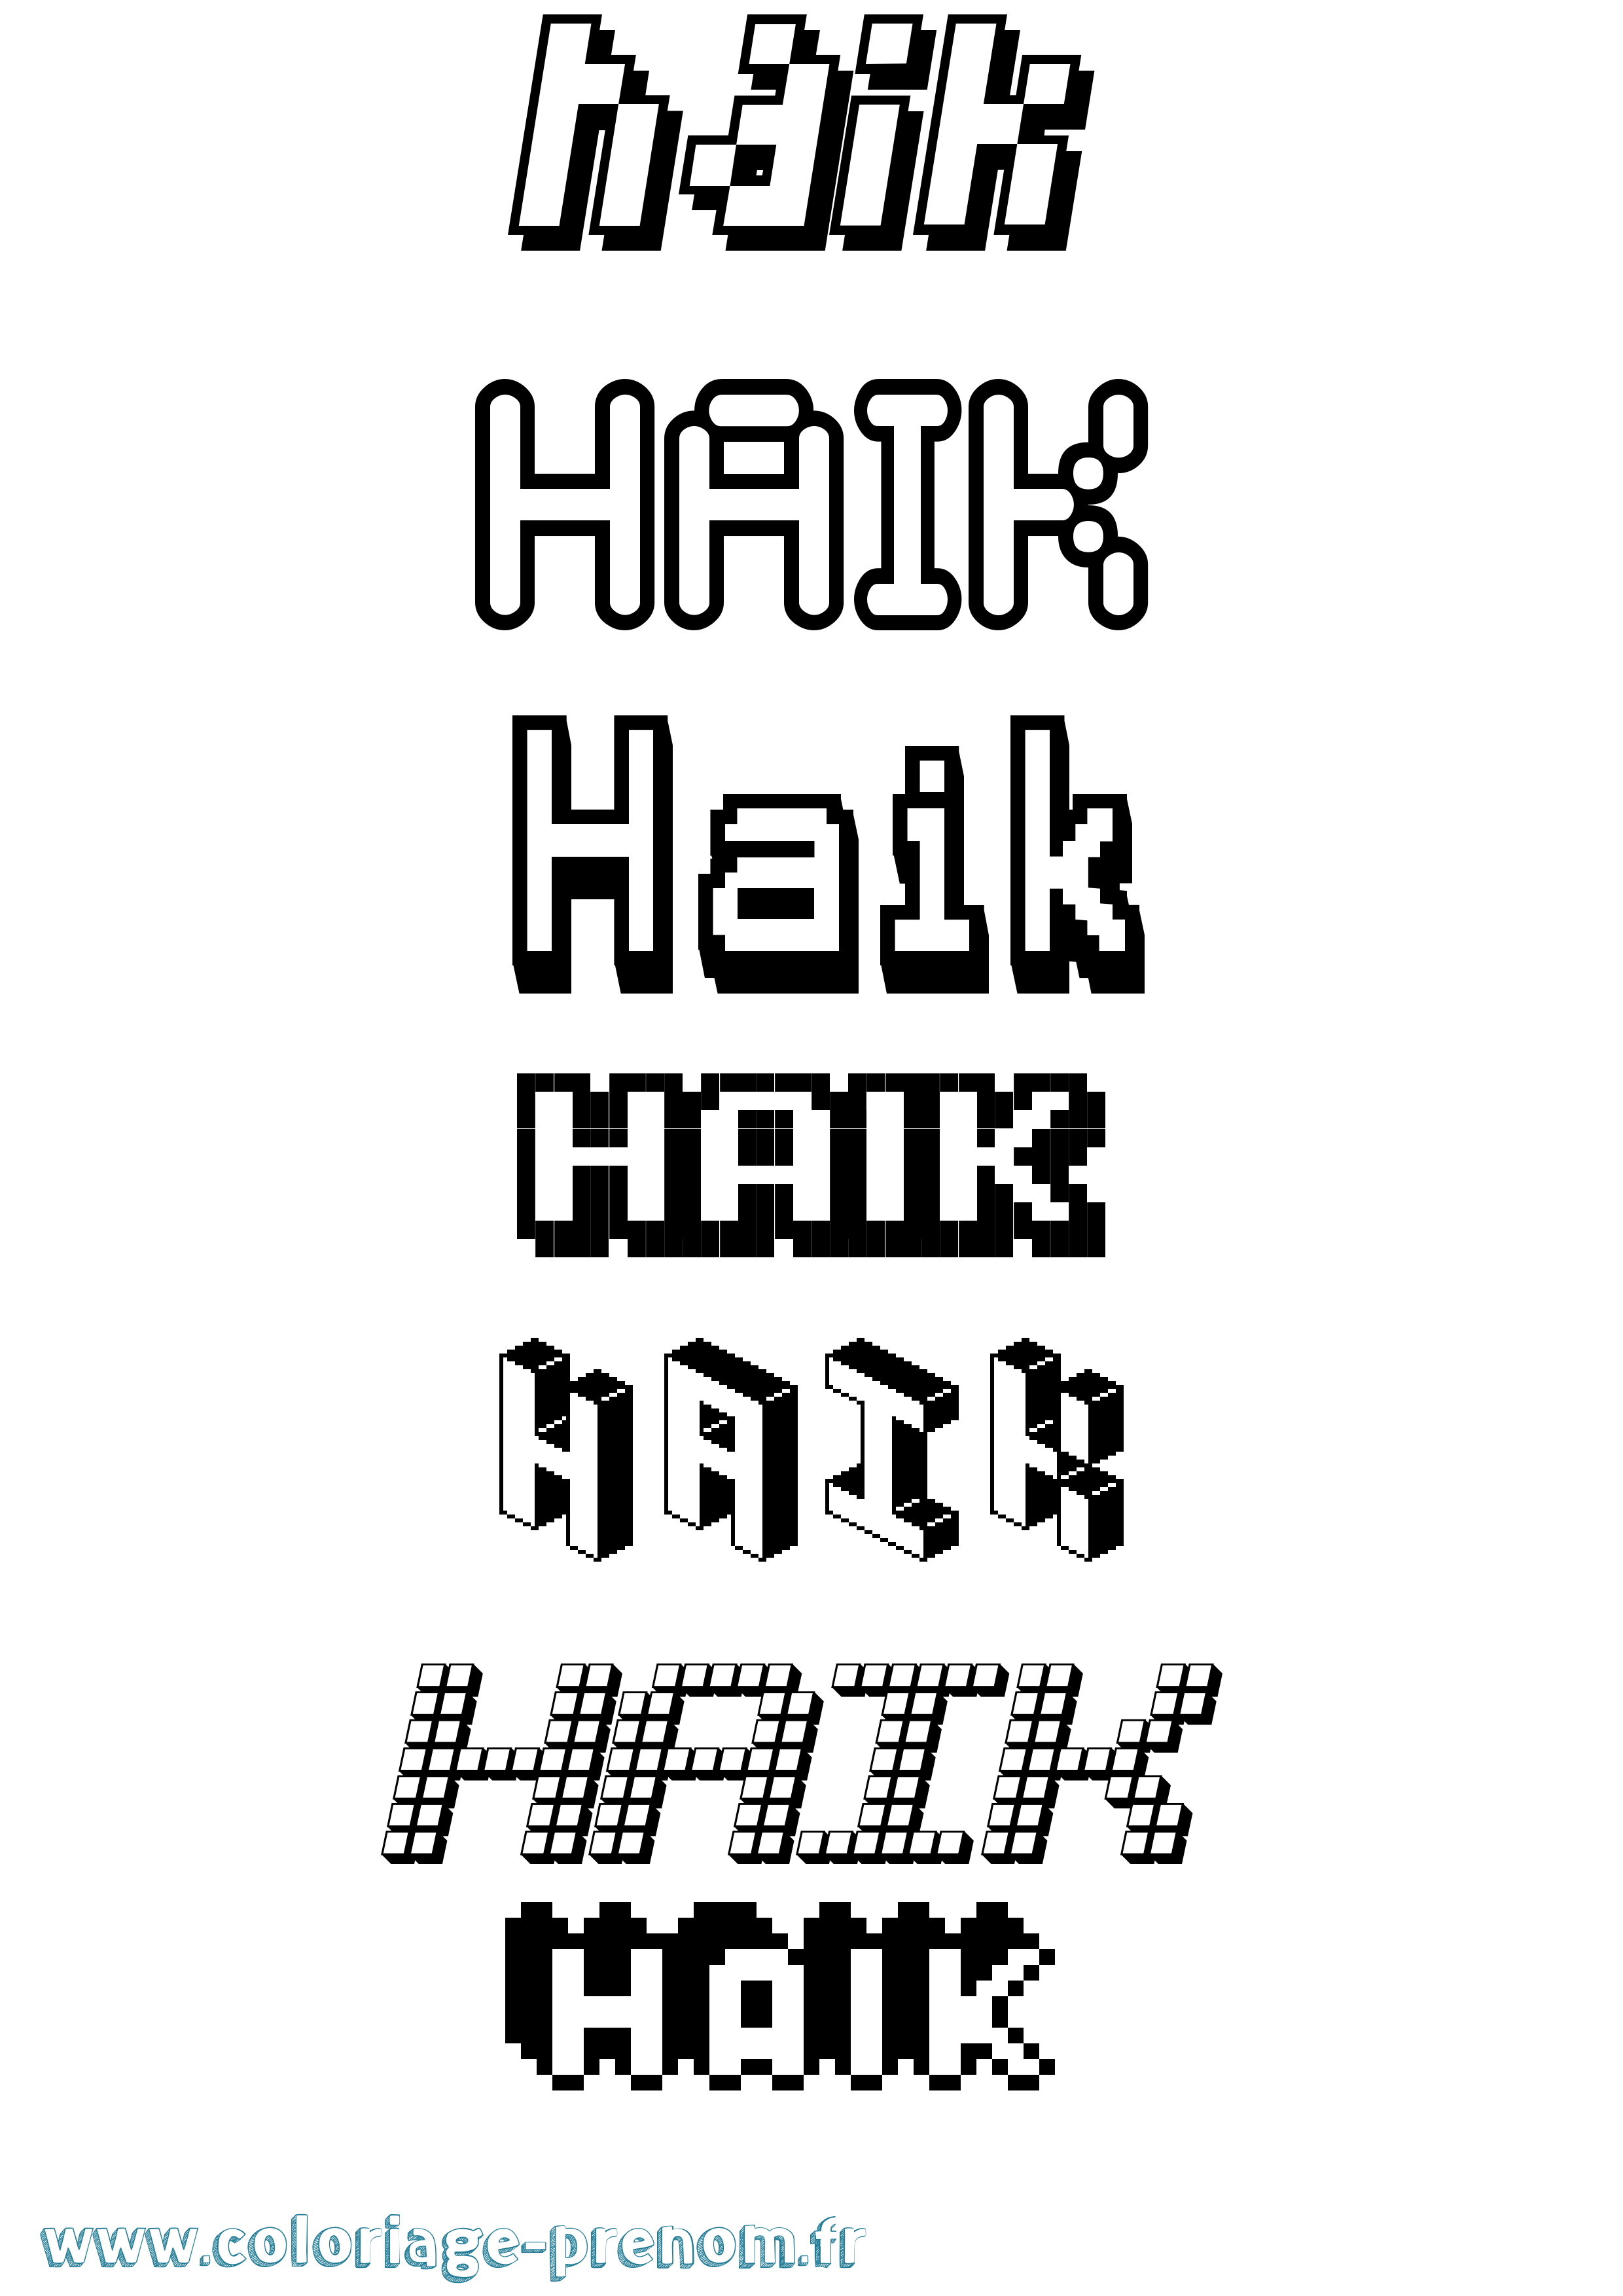 Coloriage prénom Haik Pixel